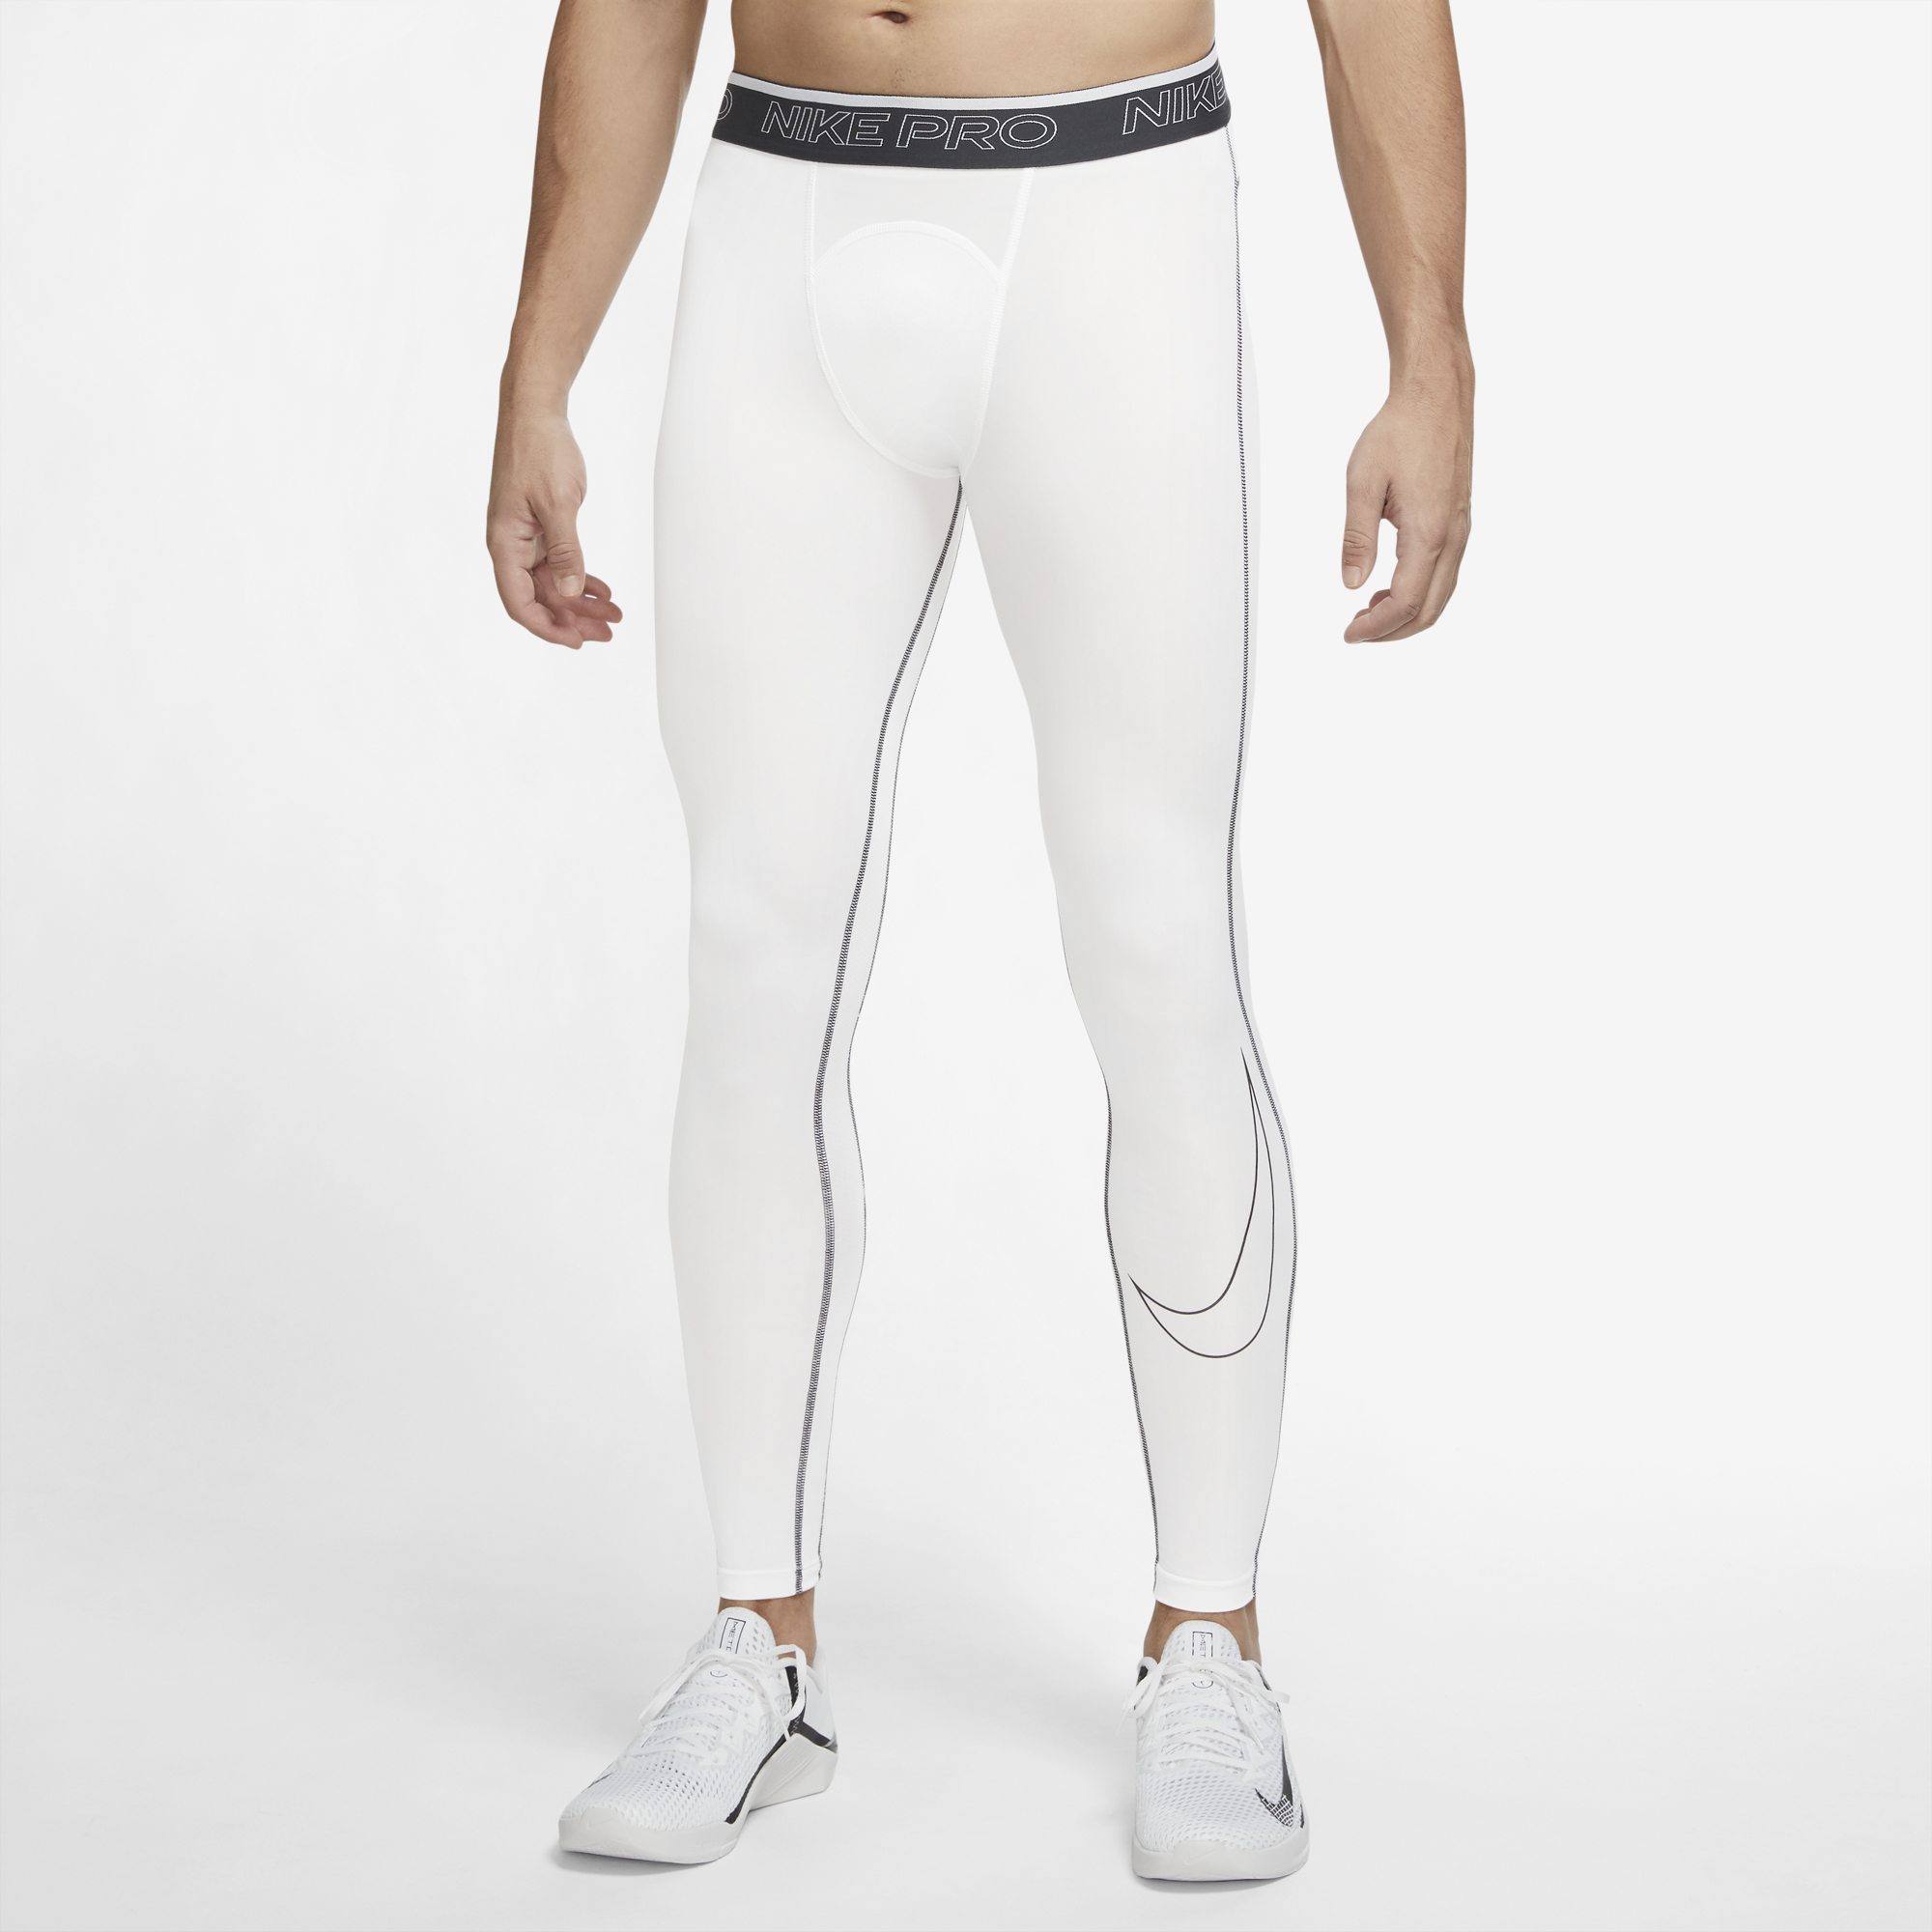 Nike Pro Men's Dri-FIT Black/White Training Tights Pants Size Small  (DD1913-010)